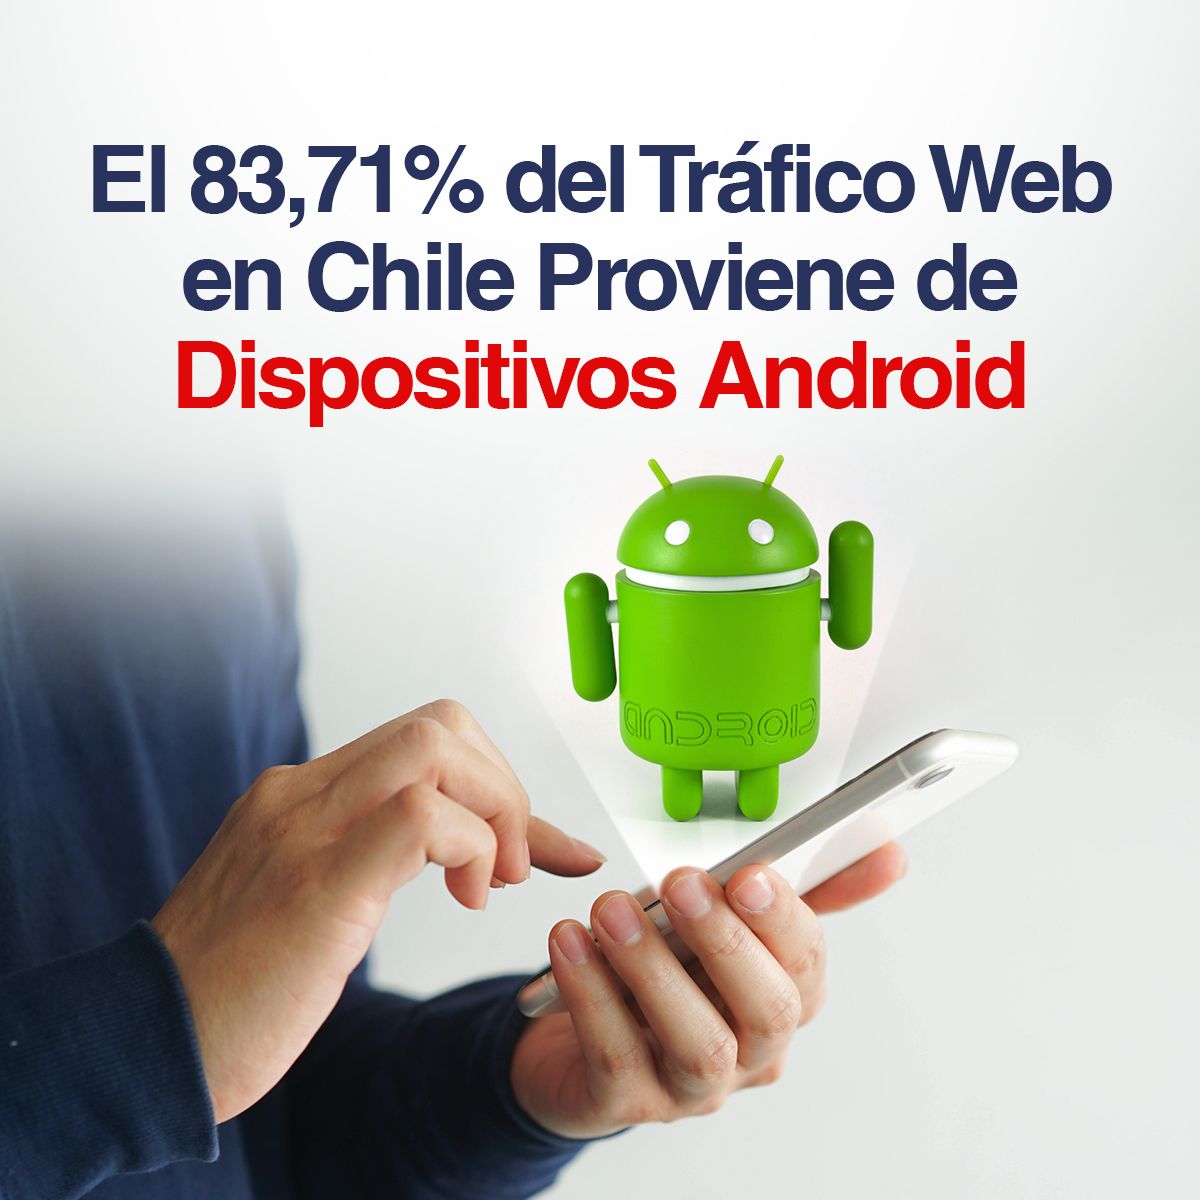 El 83,71% del Tráfico Web en Chile Proviene de Dispositivos Android